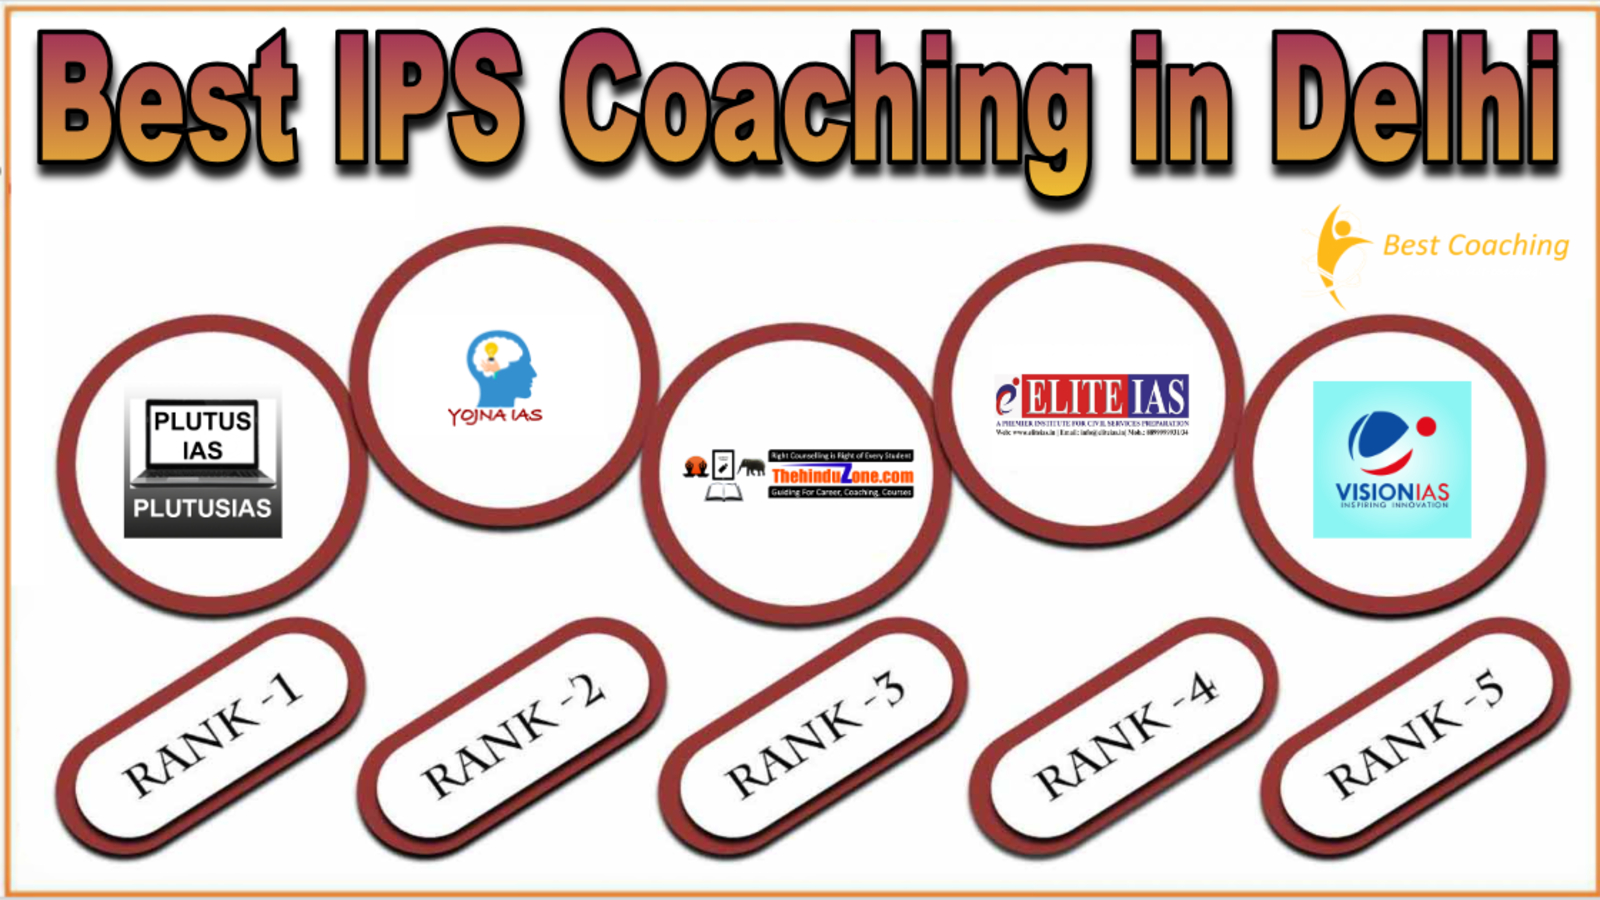 Best IPS Coaching in Delhi